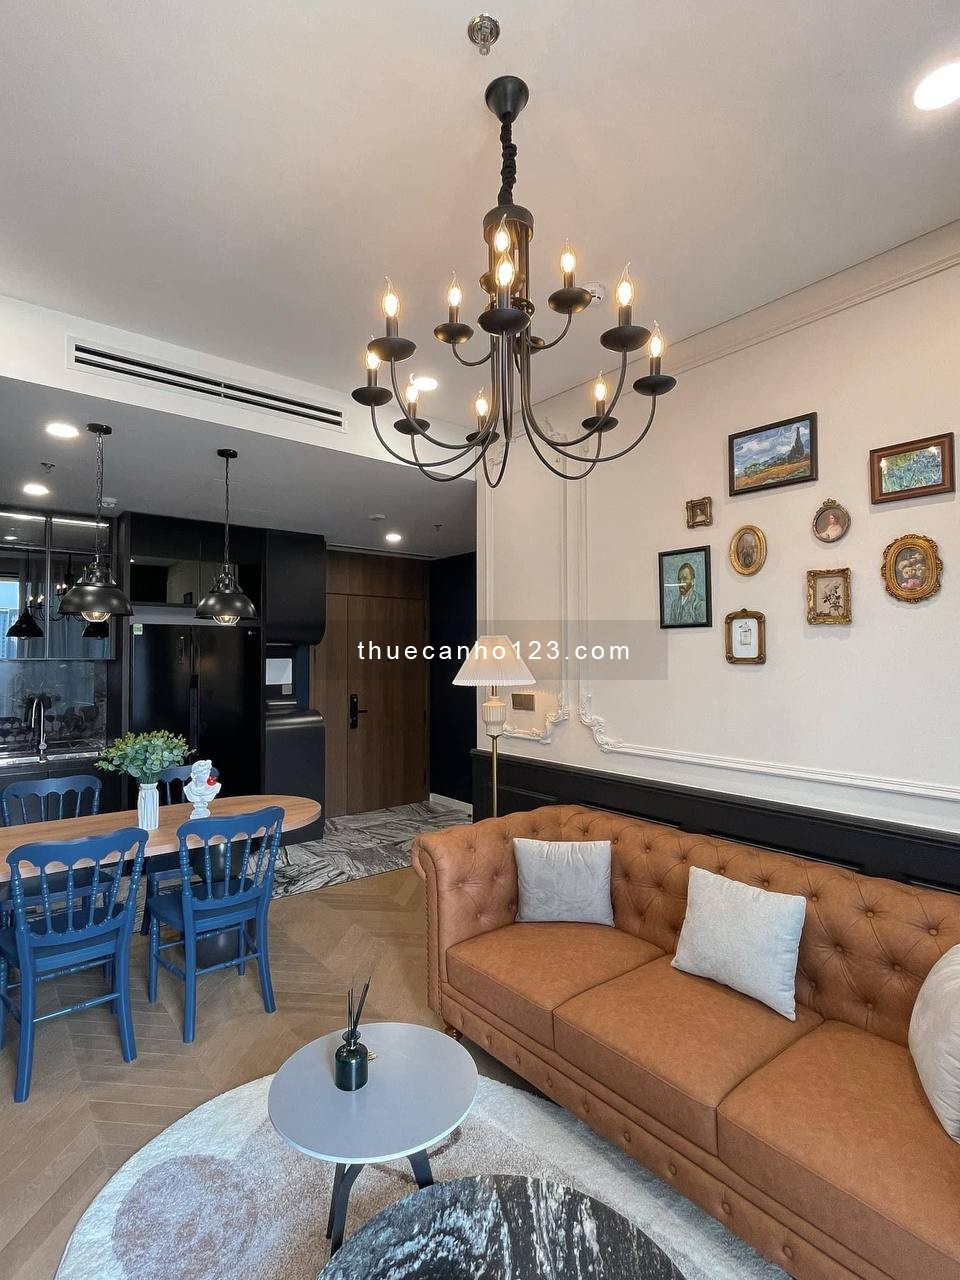 Lumiere Riverside căn hộ cao cấp cho thuê S 77m2 giá 3X